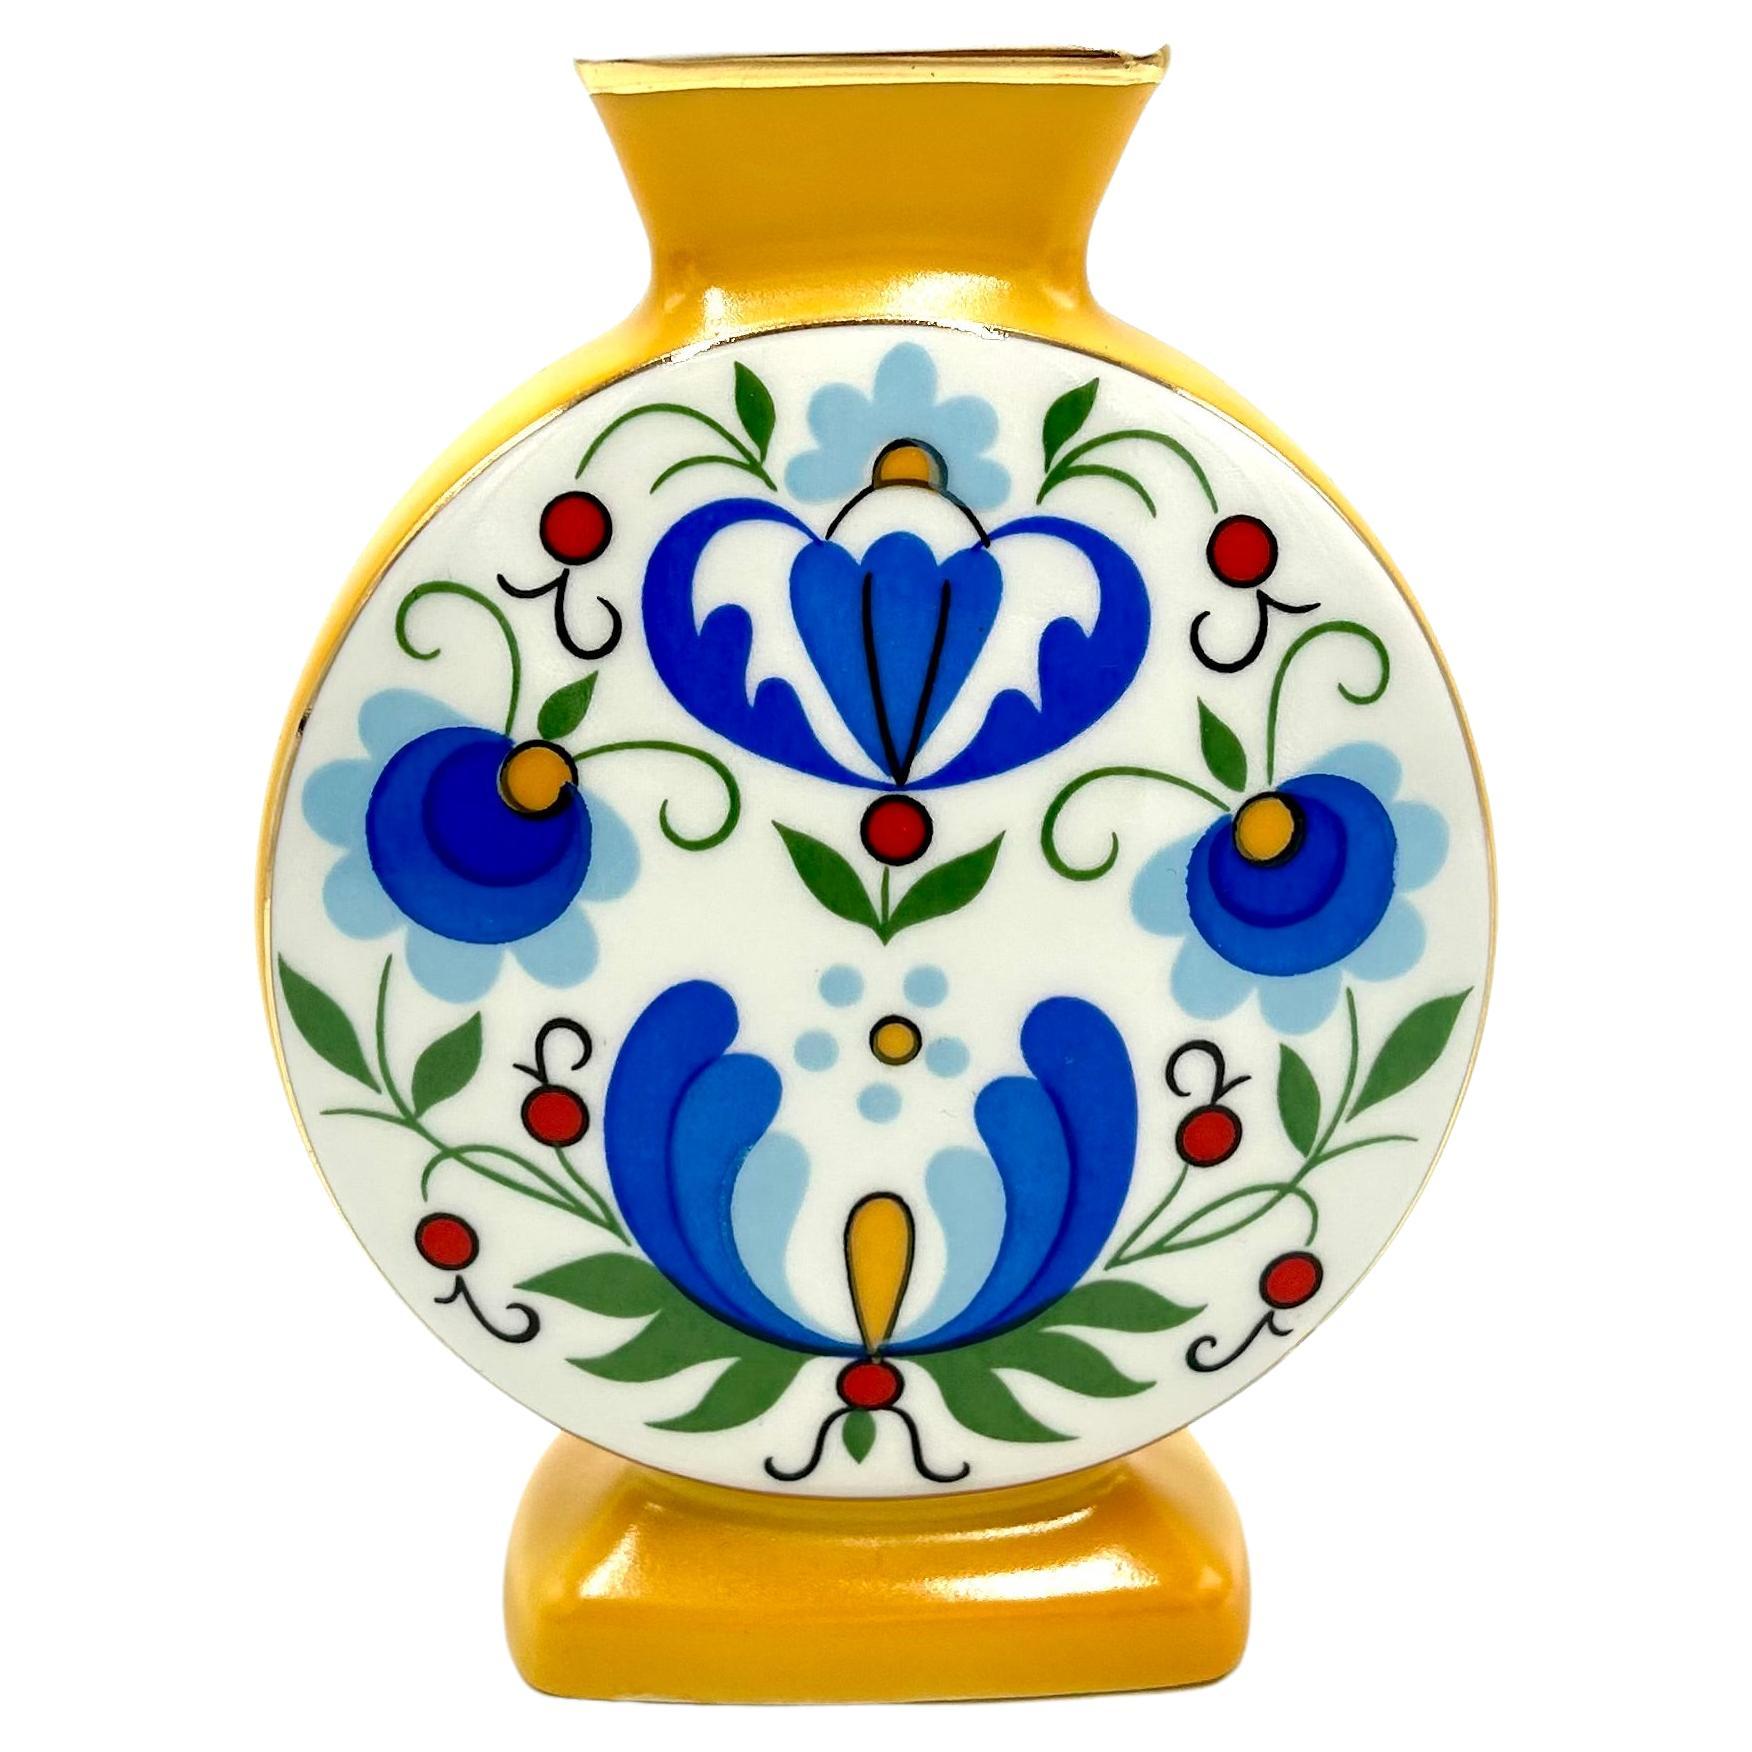 Vase à motifs populaires, Lubiana, Pologne, années 1970